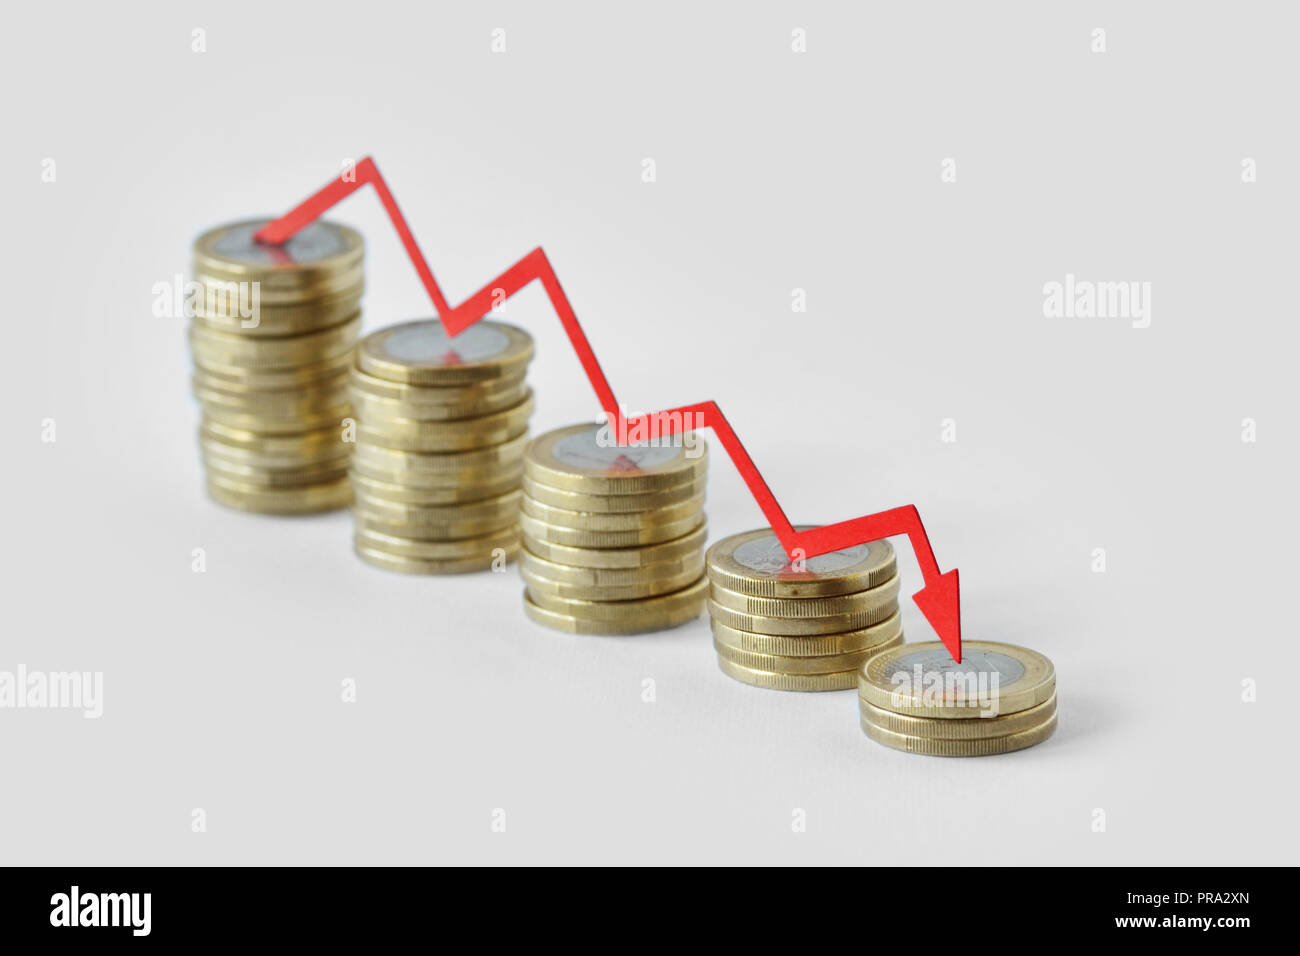 Stapel von Münzen mit roten abnehmende Pfeil - Verlust von Geld-Konzept Stockfoto